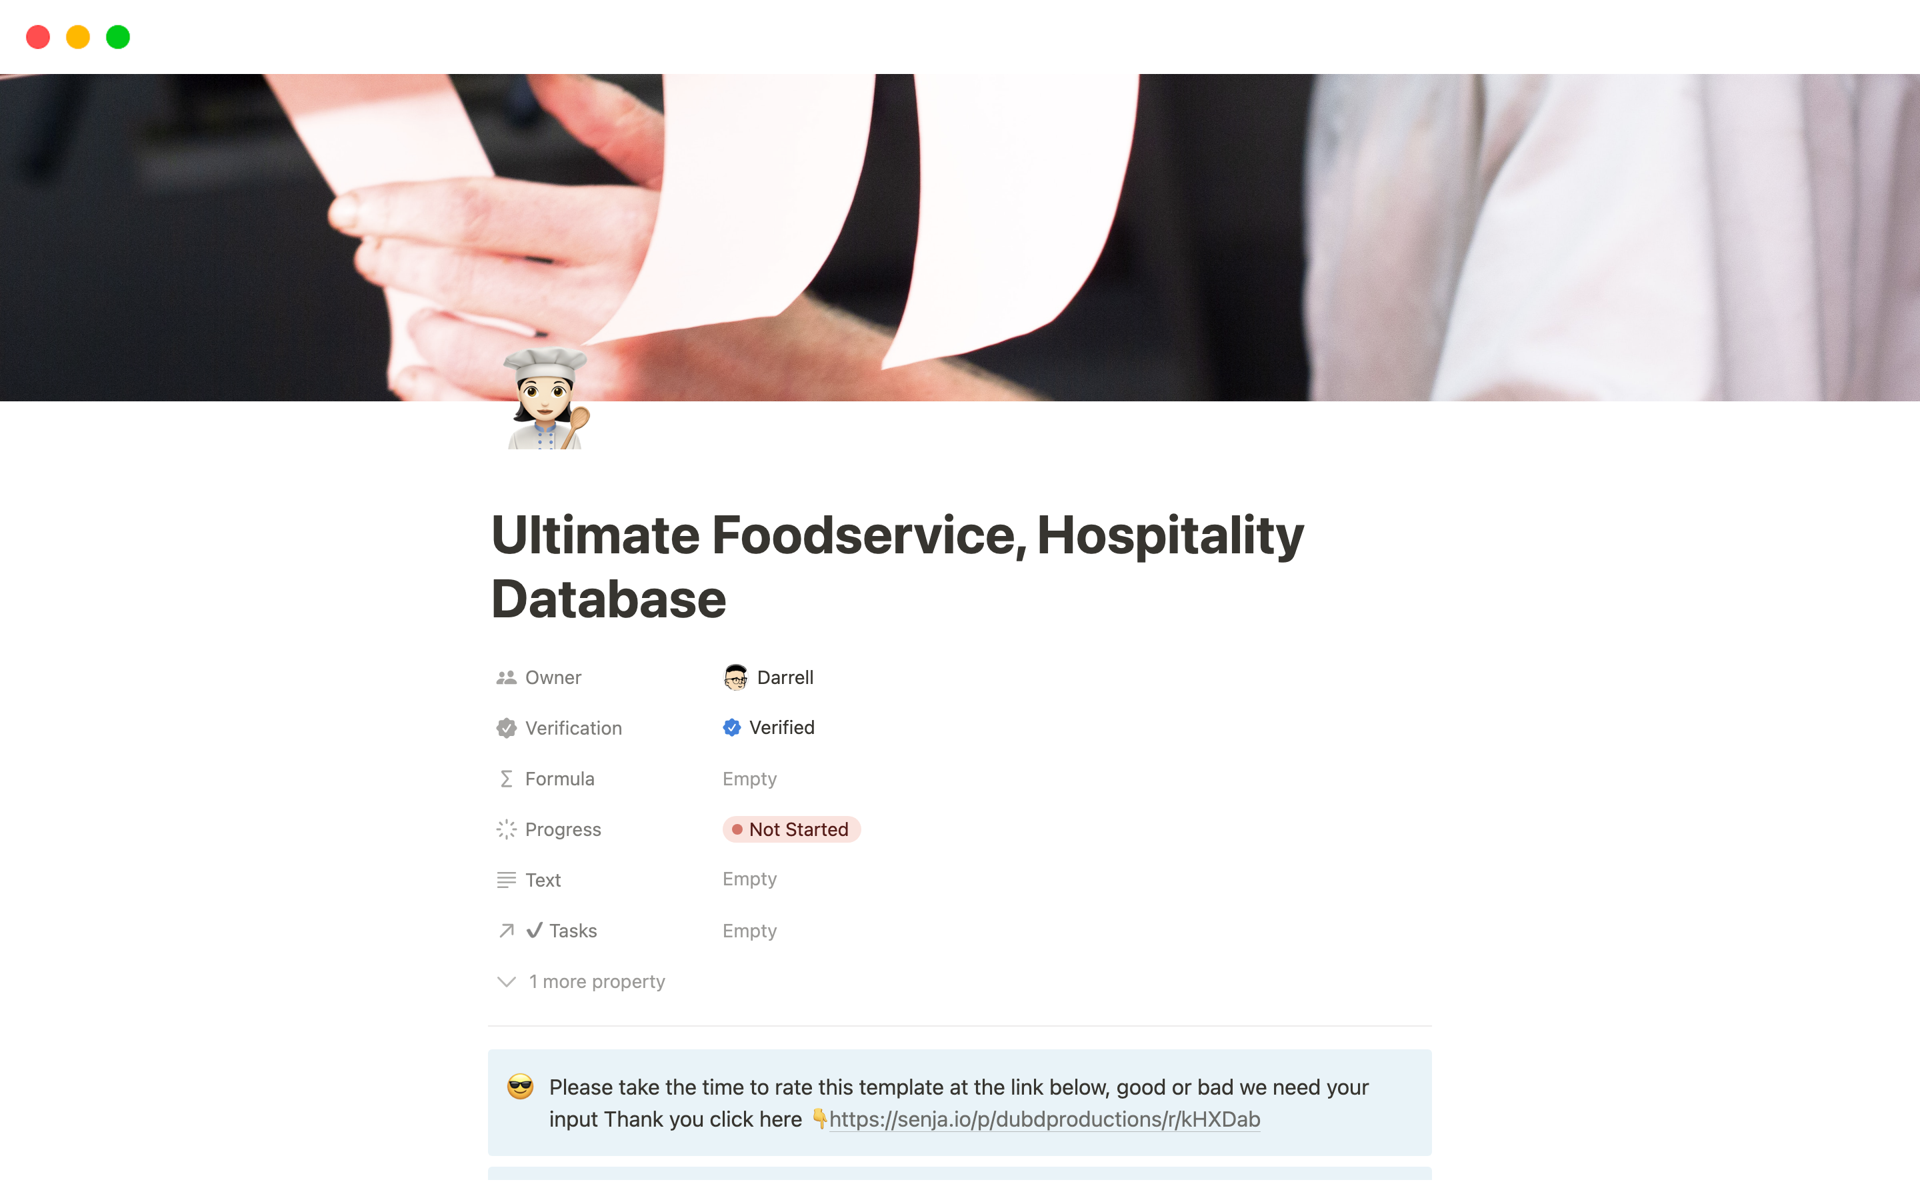 Vista previa de una plantilla para Ultimate Foodservice, Hospitality Database